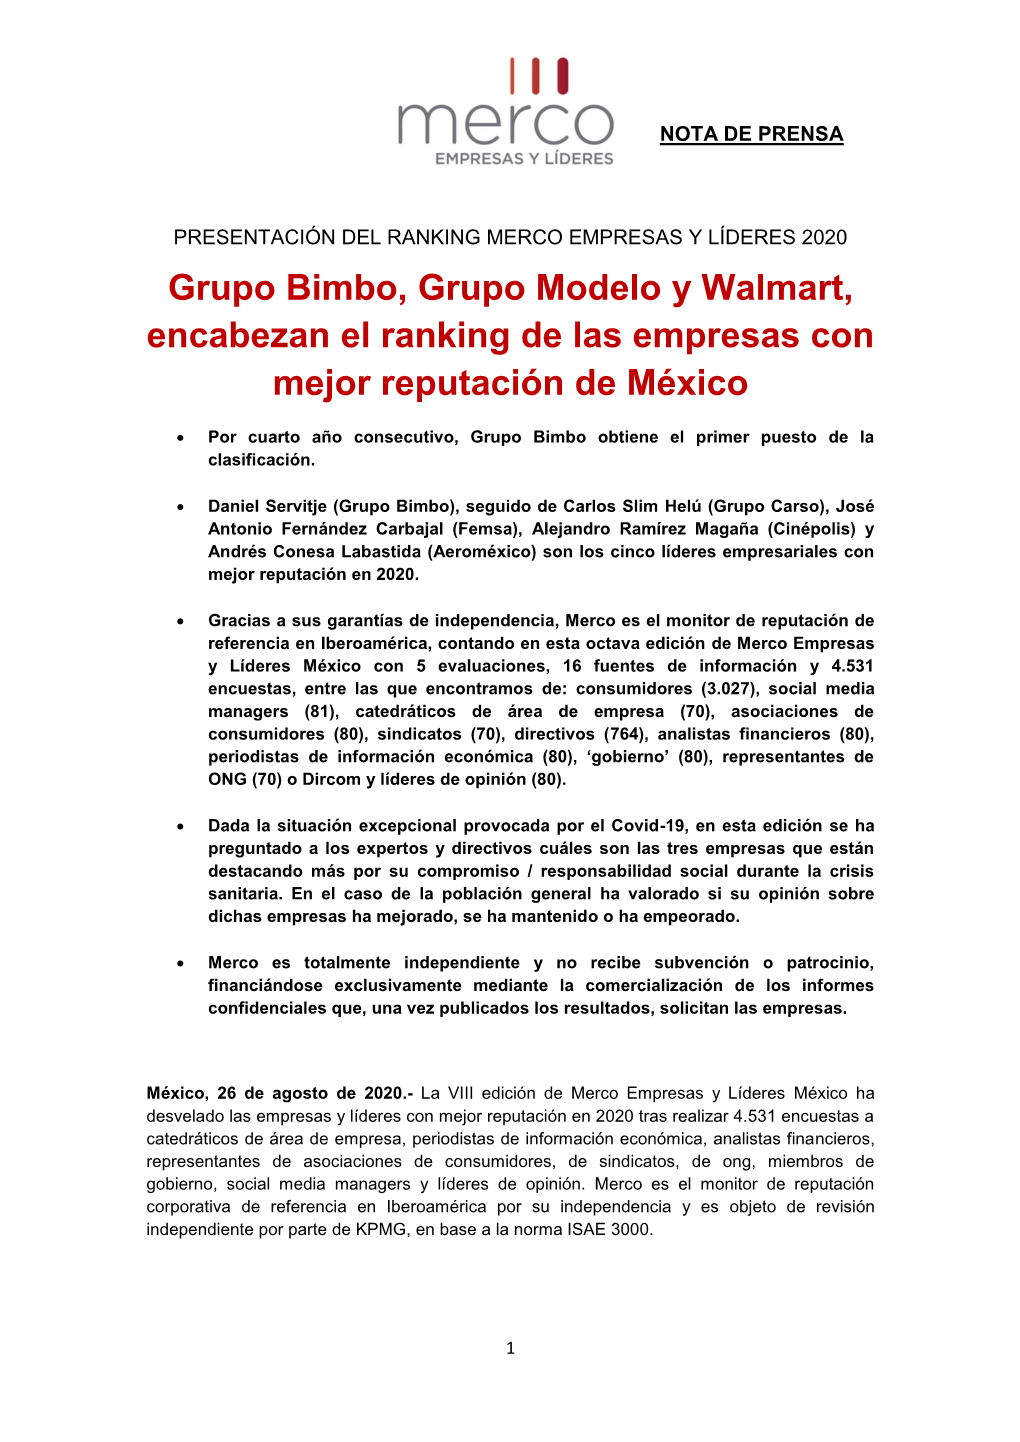 Grupo Bimbo, Grupo Modelo Y Walmart, Encabezan El Ranking De Las Empresas Con Mejor Reputación De México